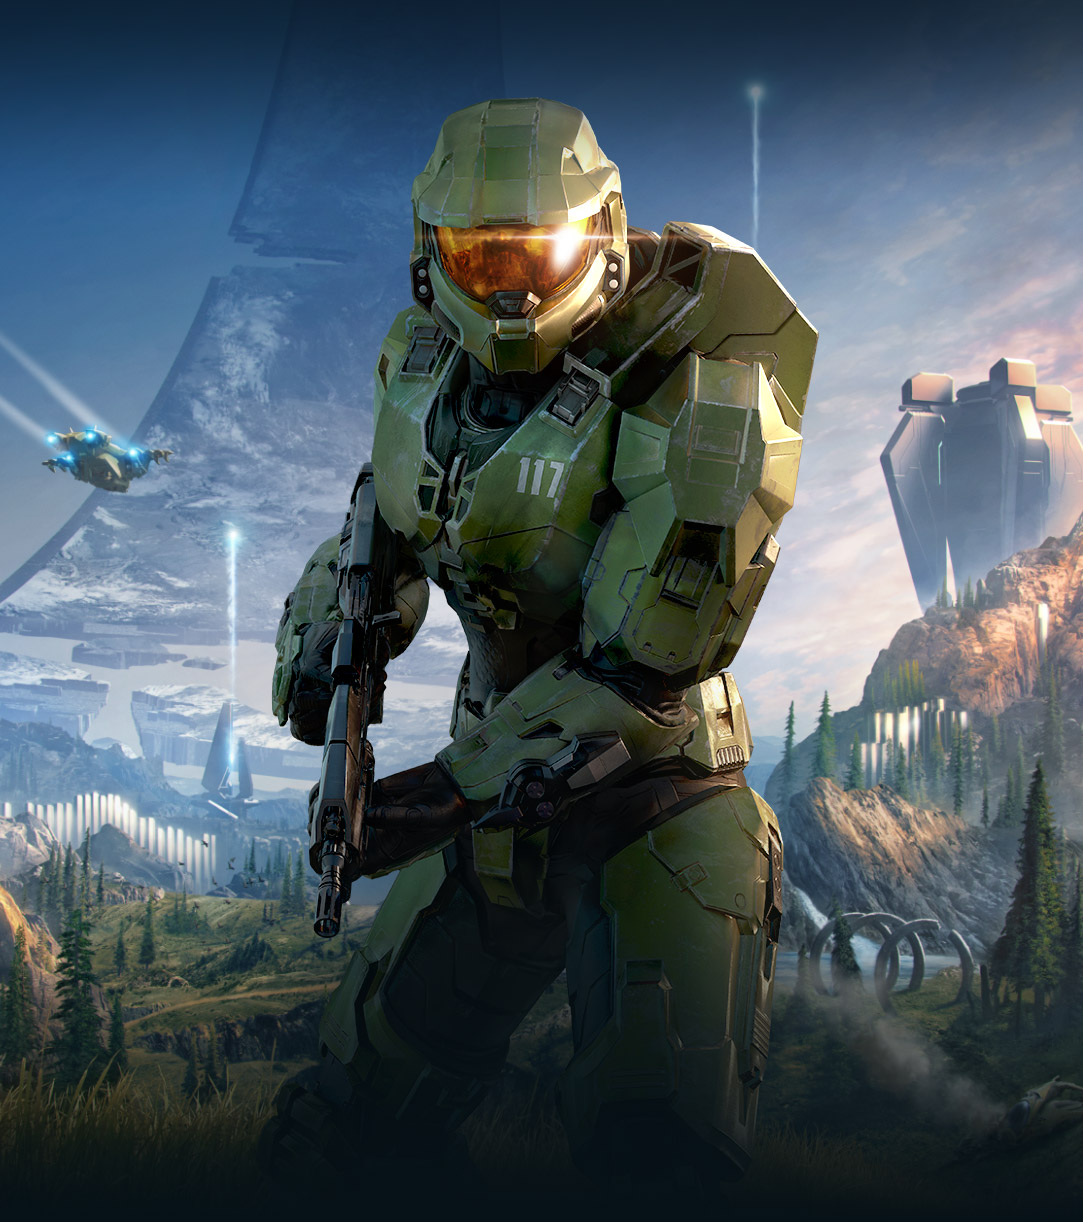 Halo Infinite, Animatie van Master Chief die naar voren kijkt in een weelderige vallei met een gebroken Halo-ring achter hem